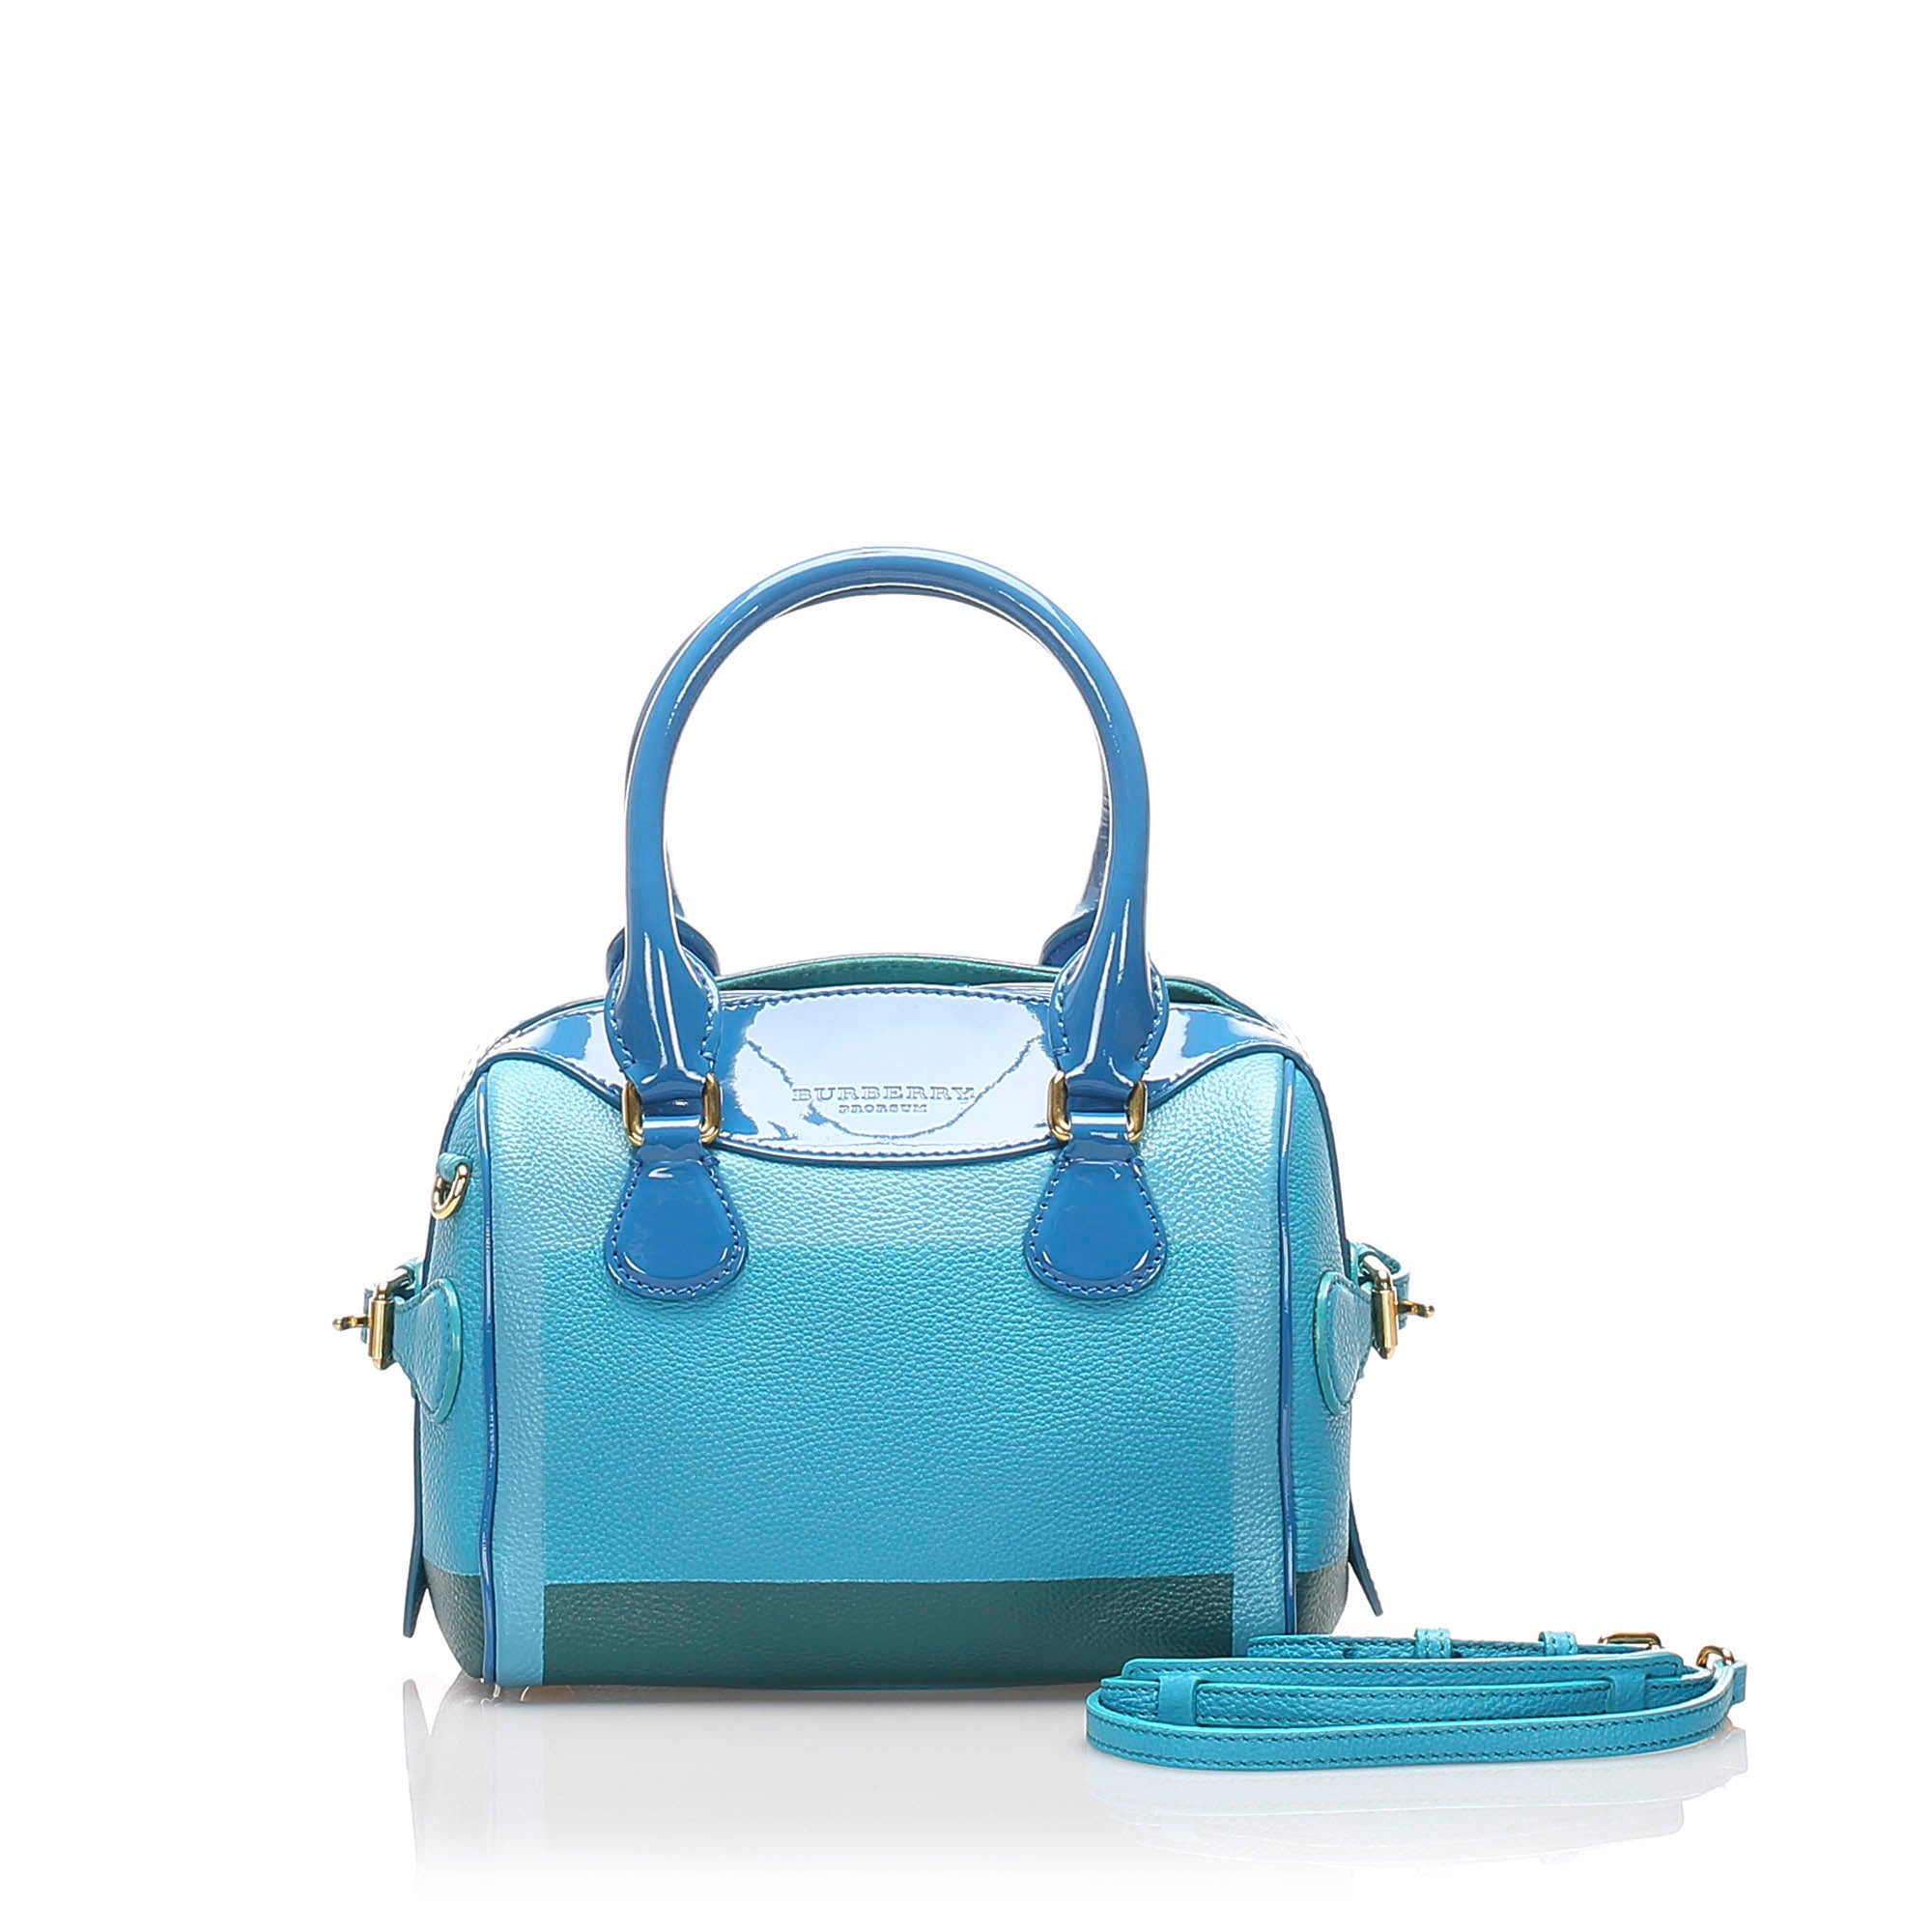 blue burberry purse